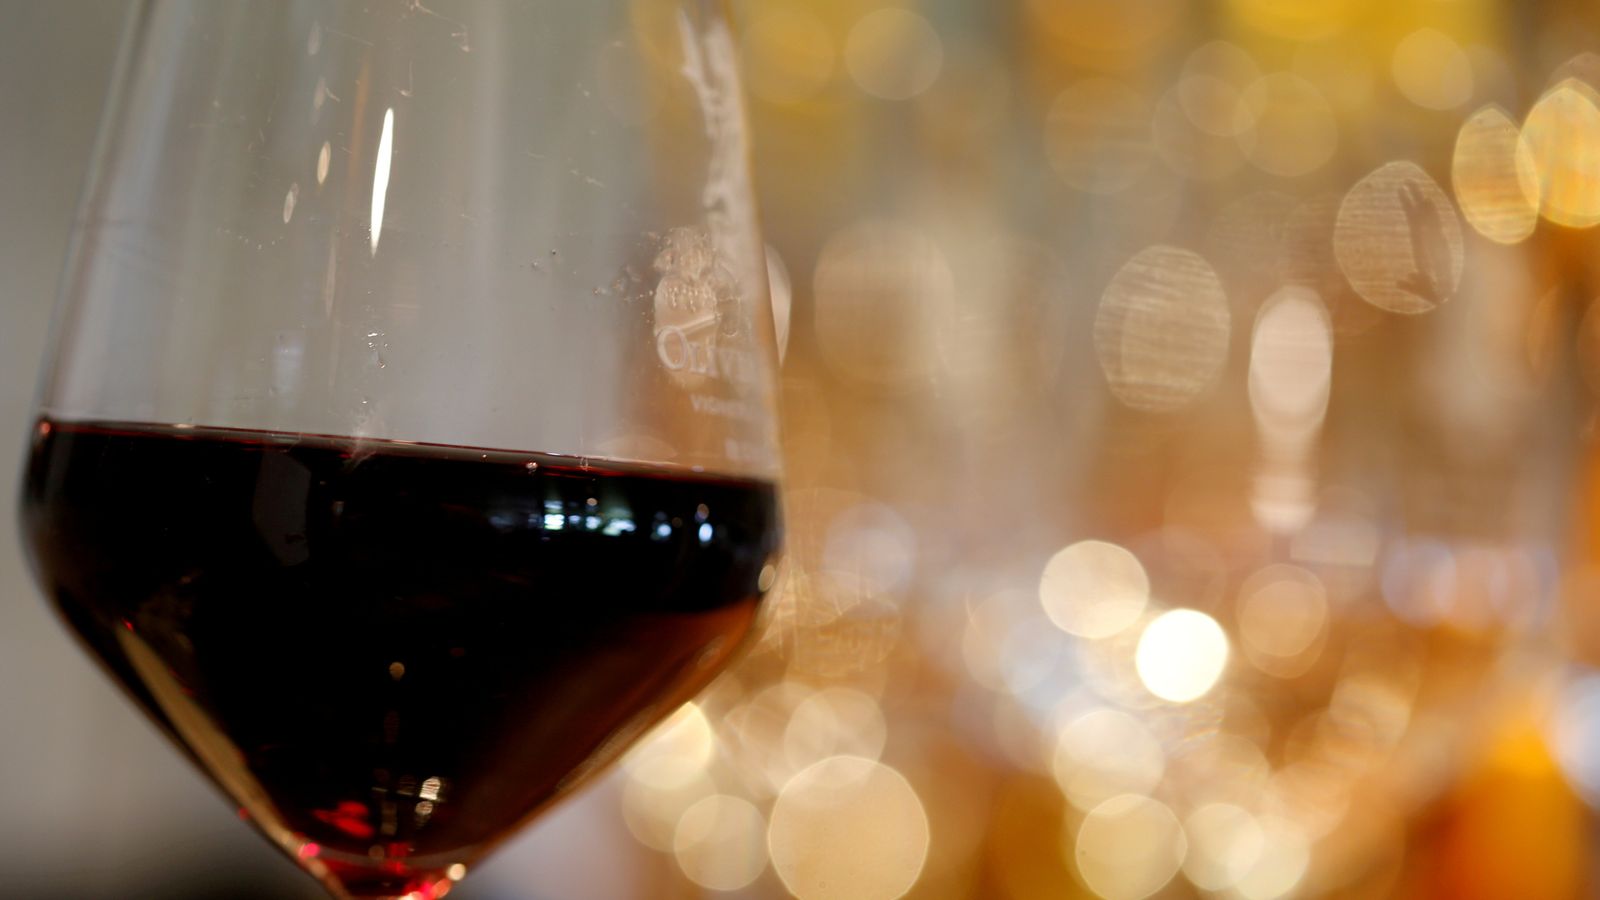 Naked Wines uncorks debt adviser after share price slump